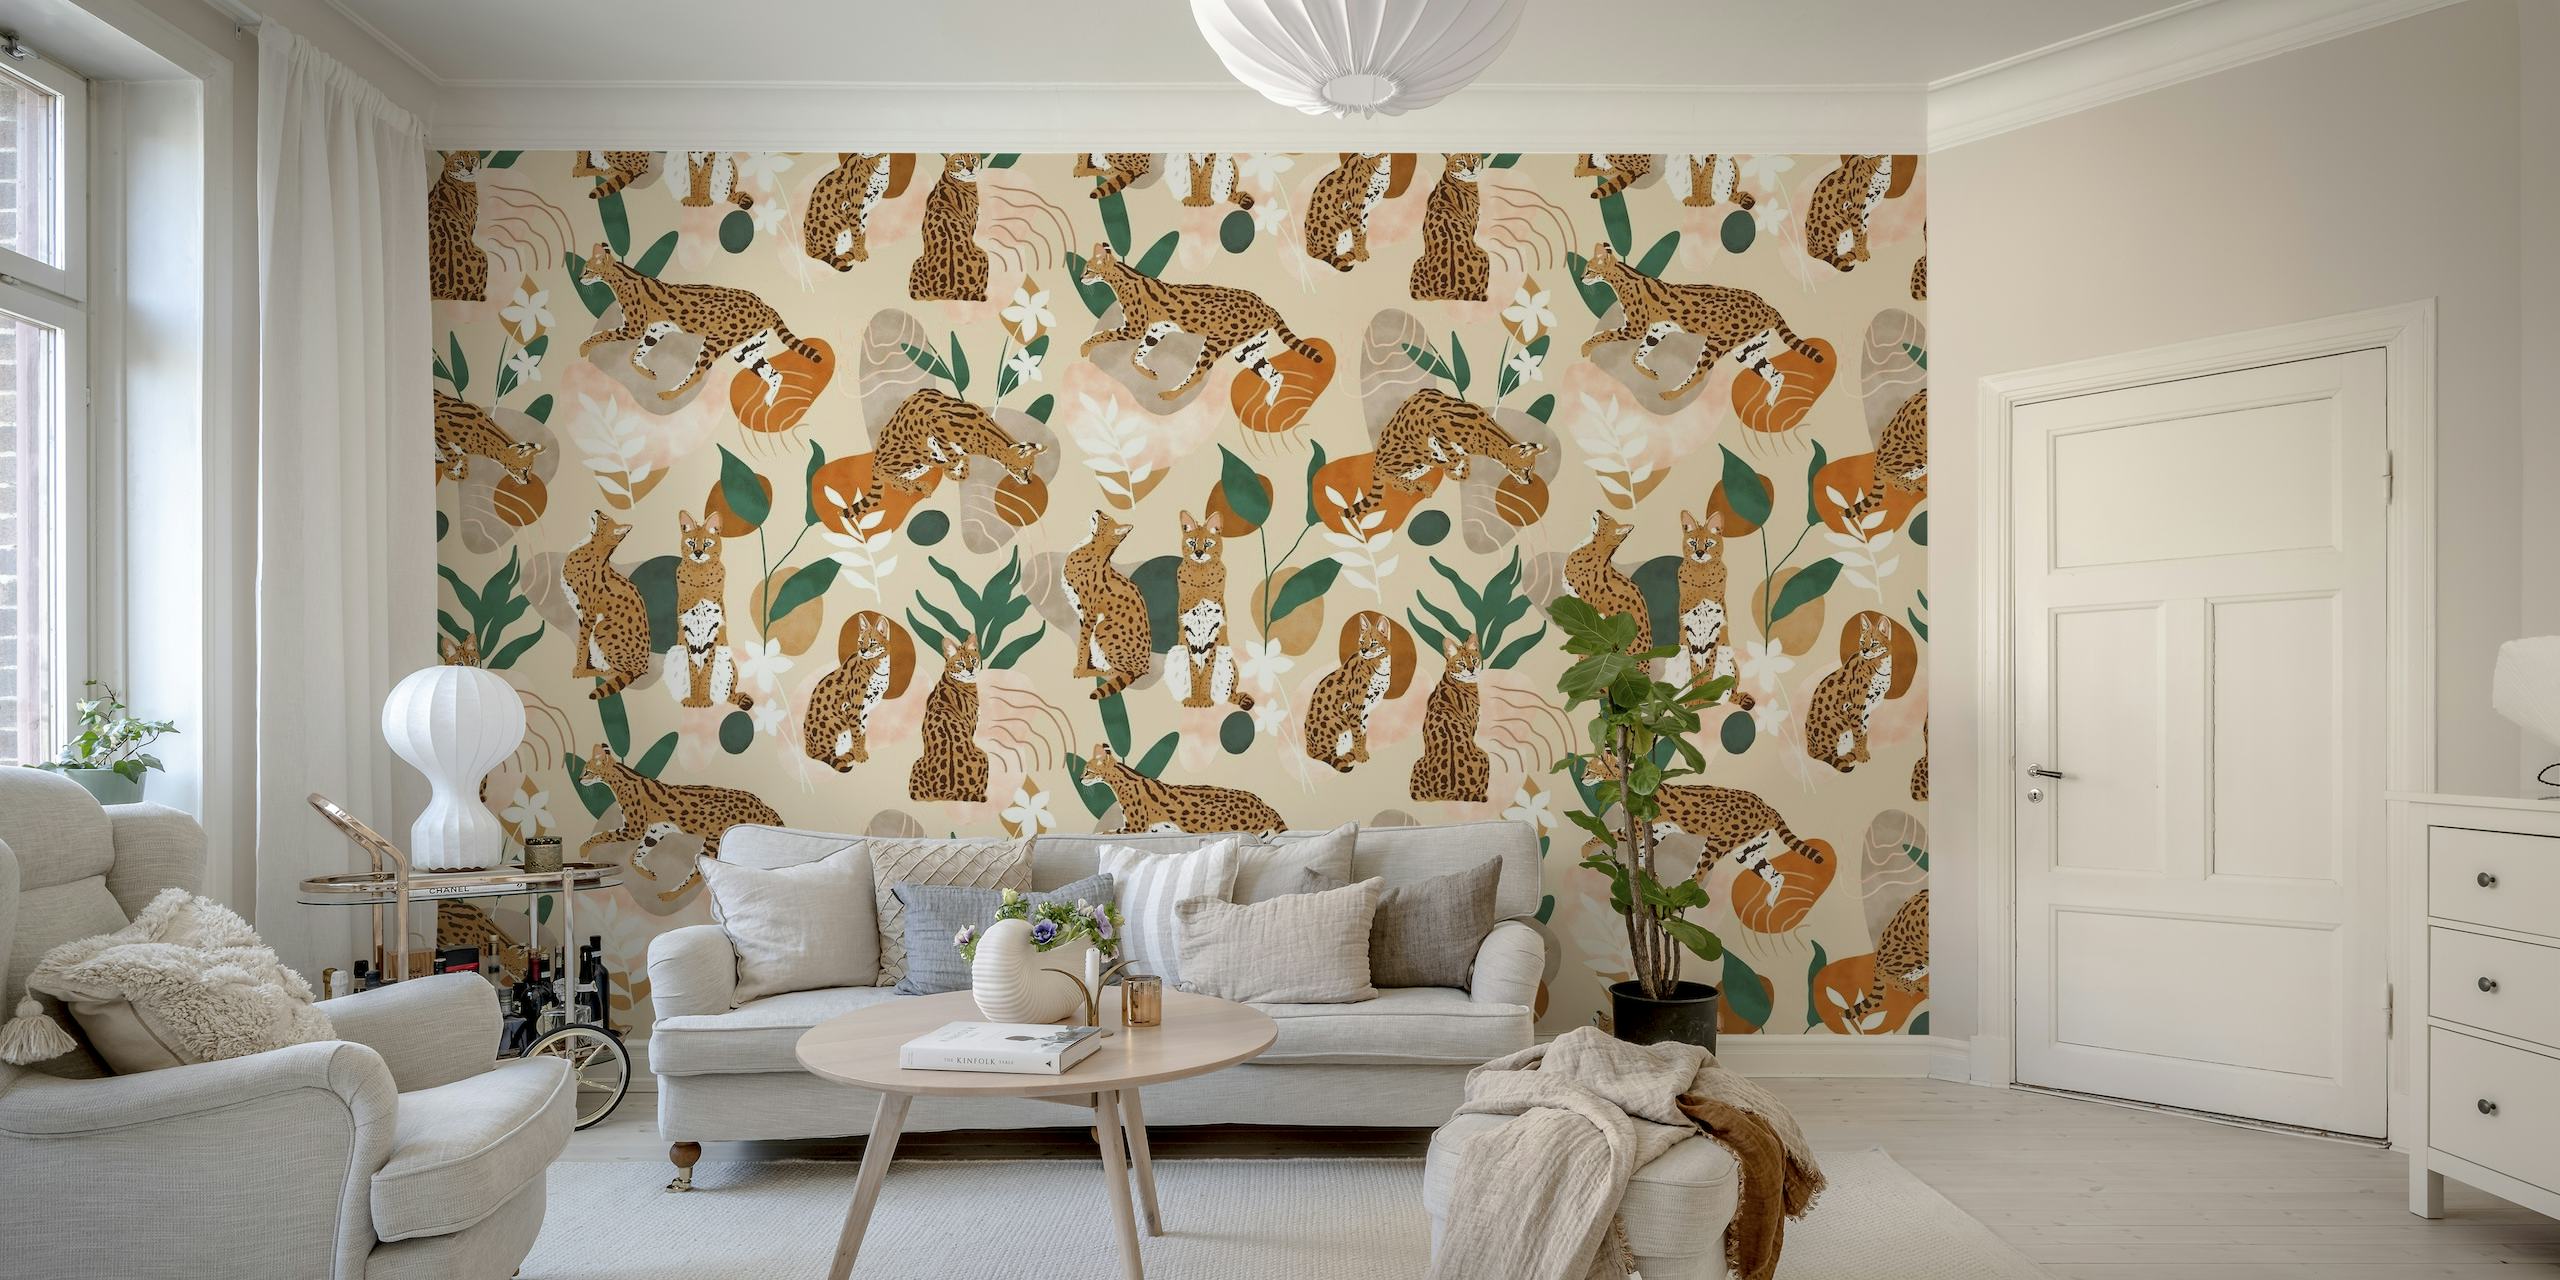 Serval kat abstrakt natur vægmaleri med stiliserede kattedyr og plantemotiver på en neutral baggrund.